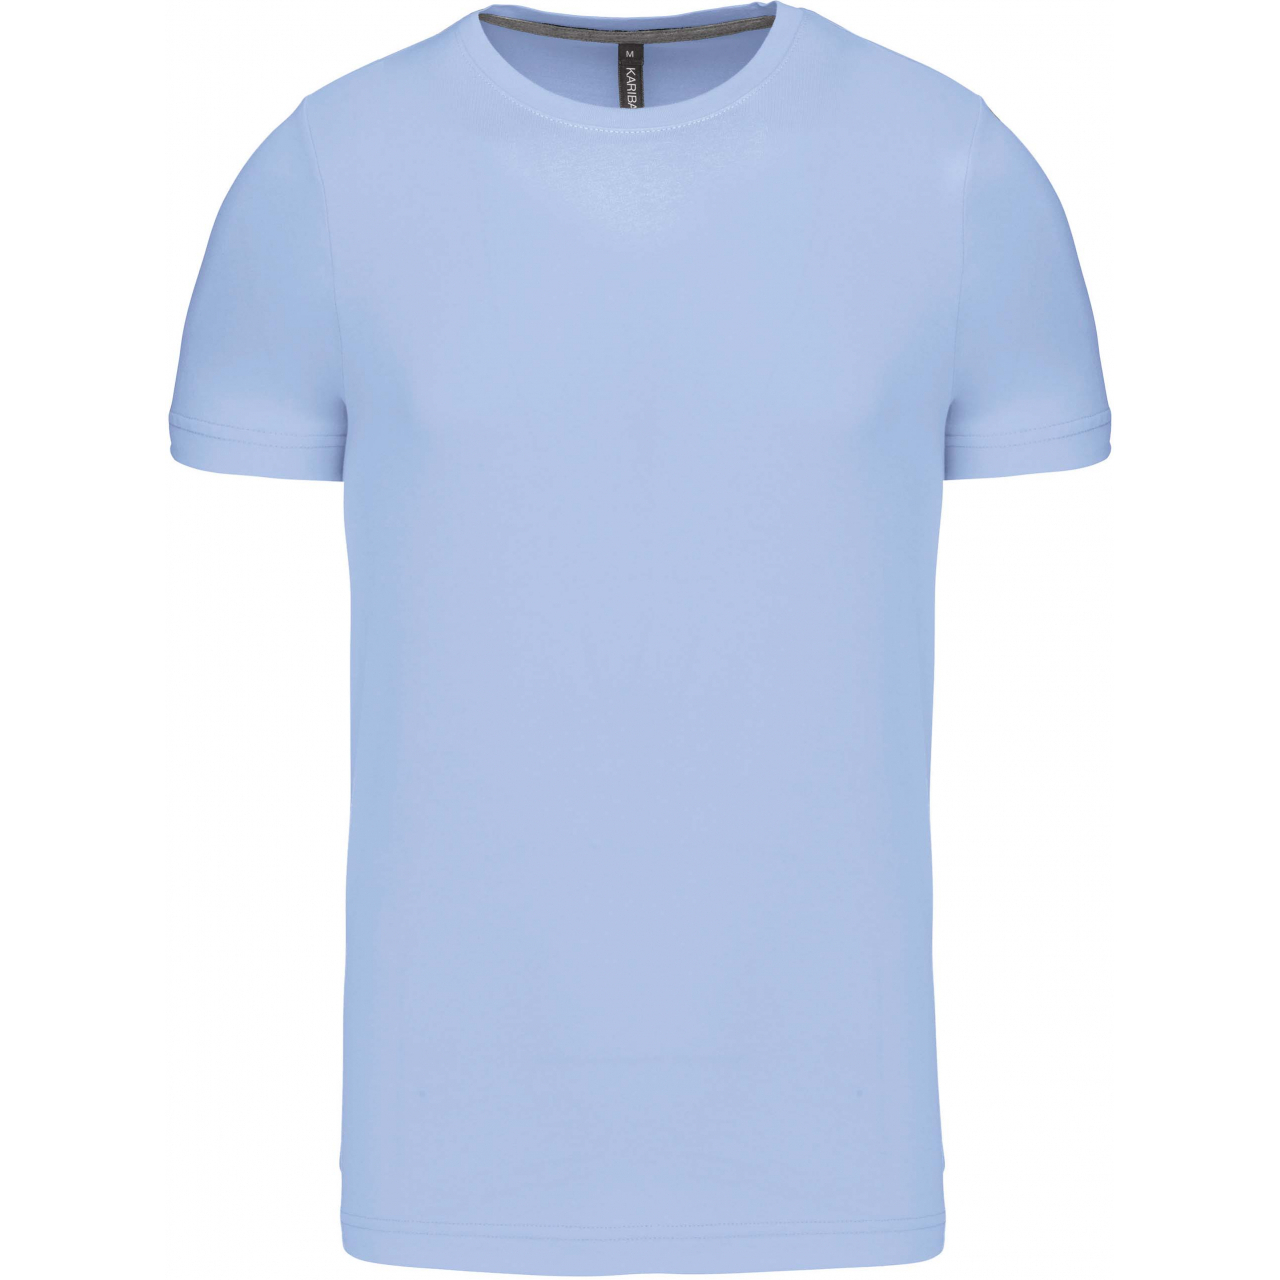 Pánské tričko Kariban krátký rukáv - světle modré, XL